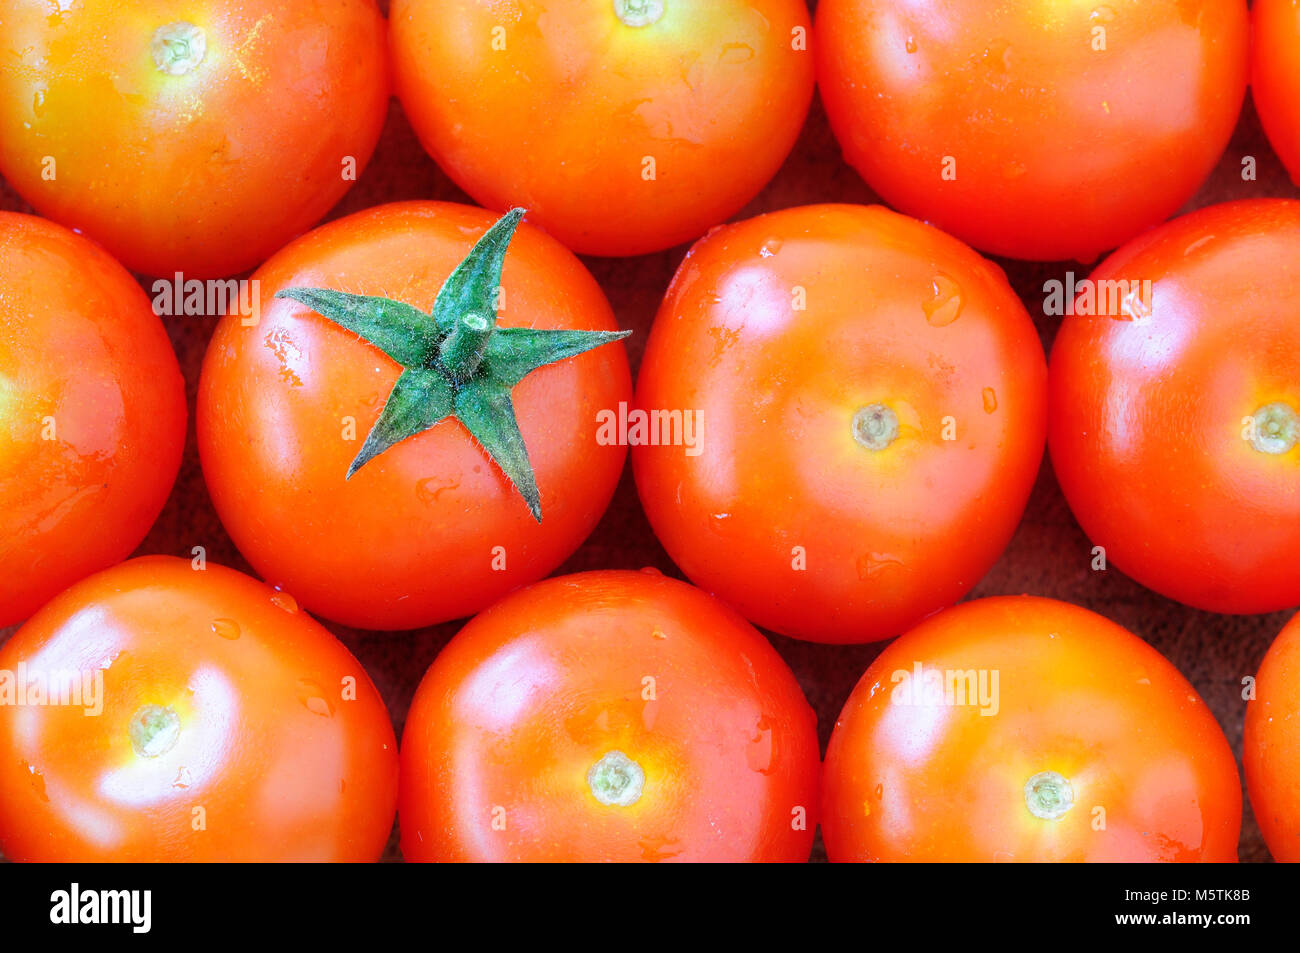 Raccolta israeliana di pomodori ciliegini, di forma piccola e arrotondata. Foto Stock